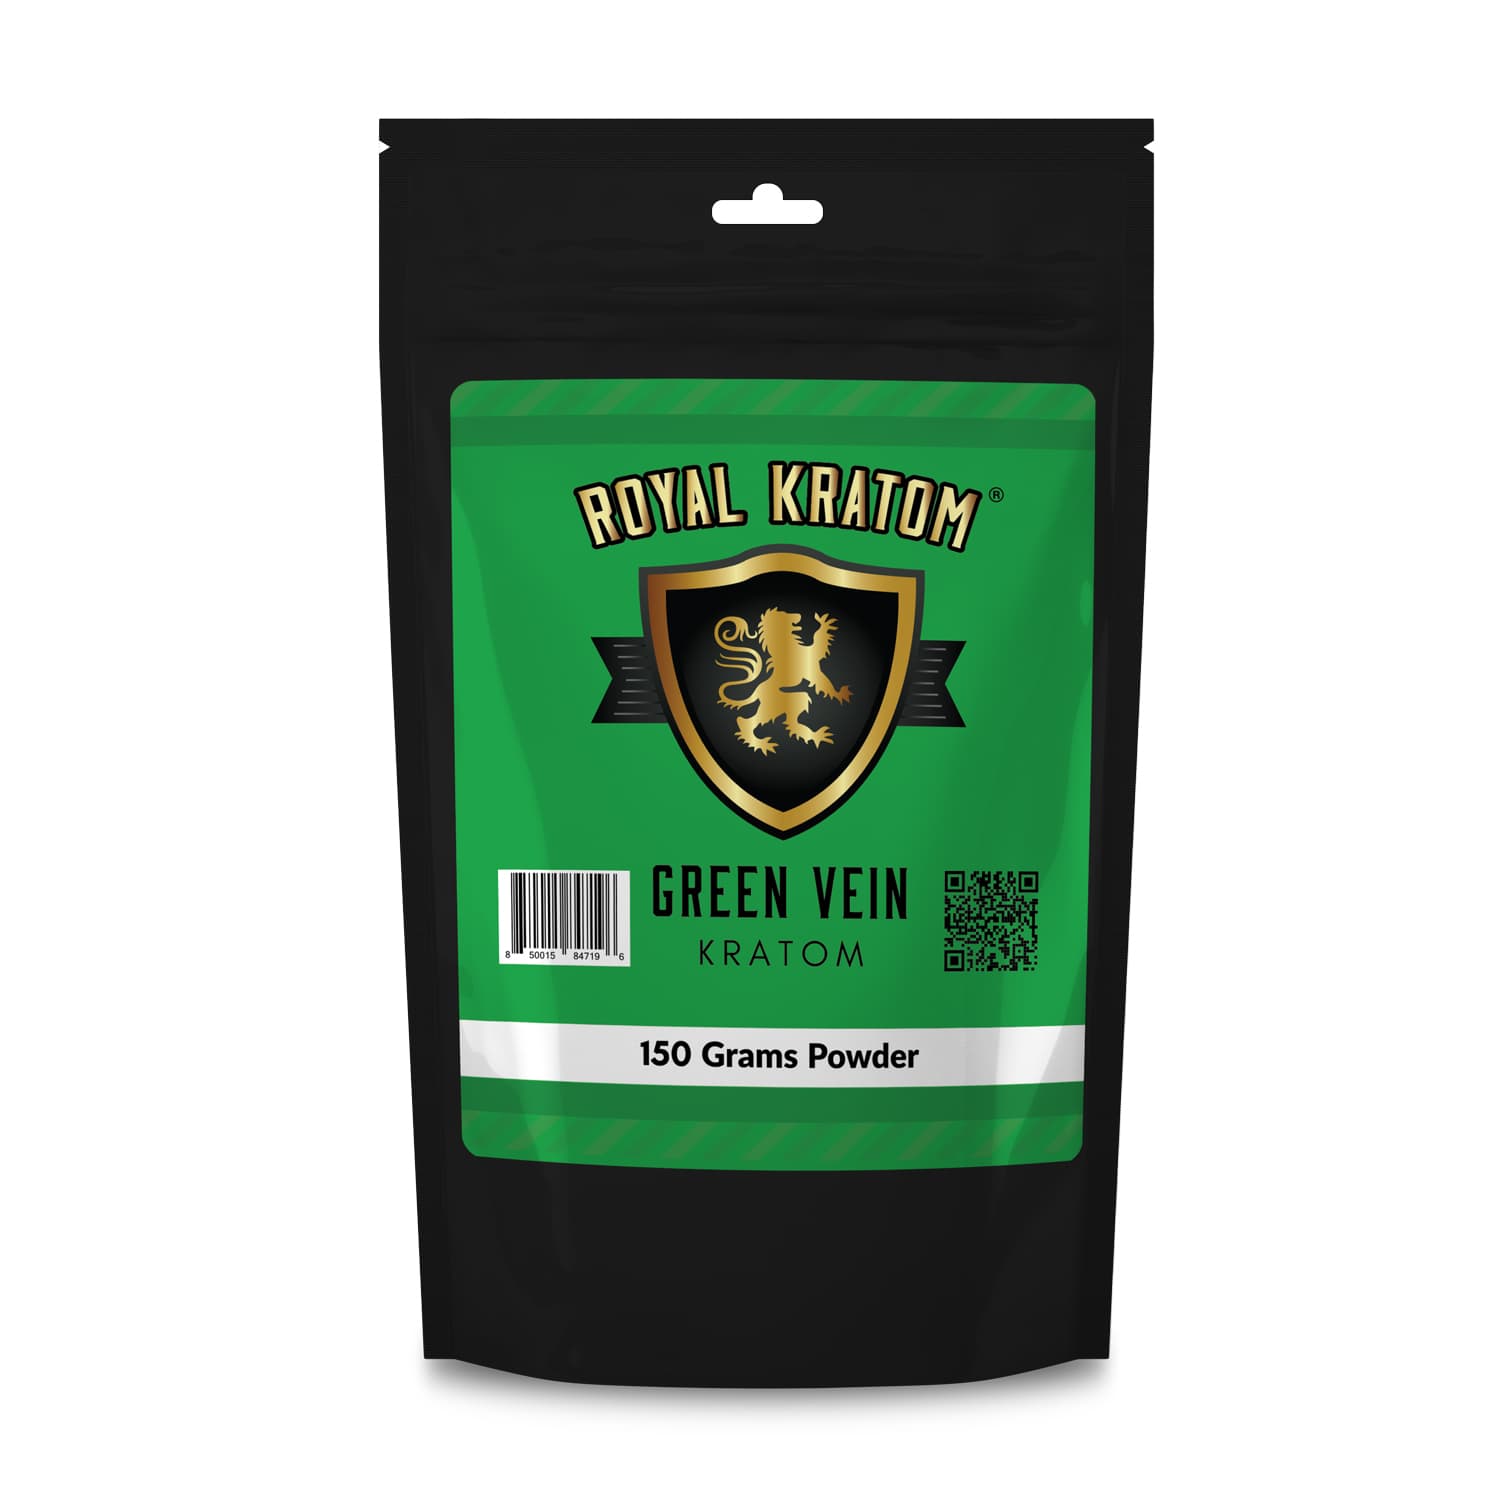 Royal Kratom green vein kratom powder 150 grams package